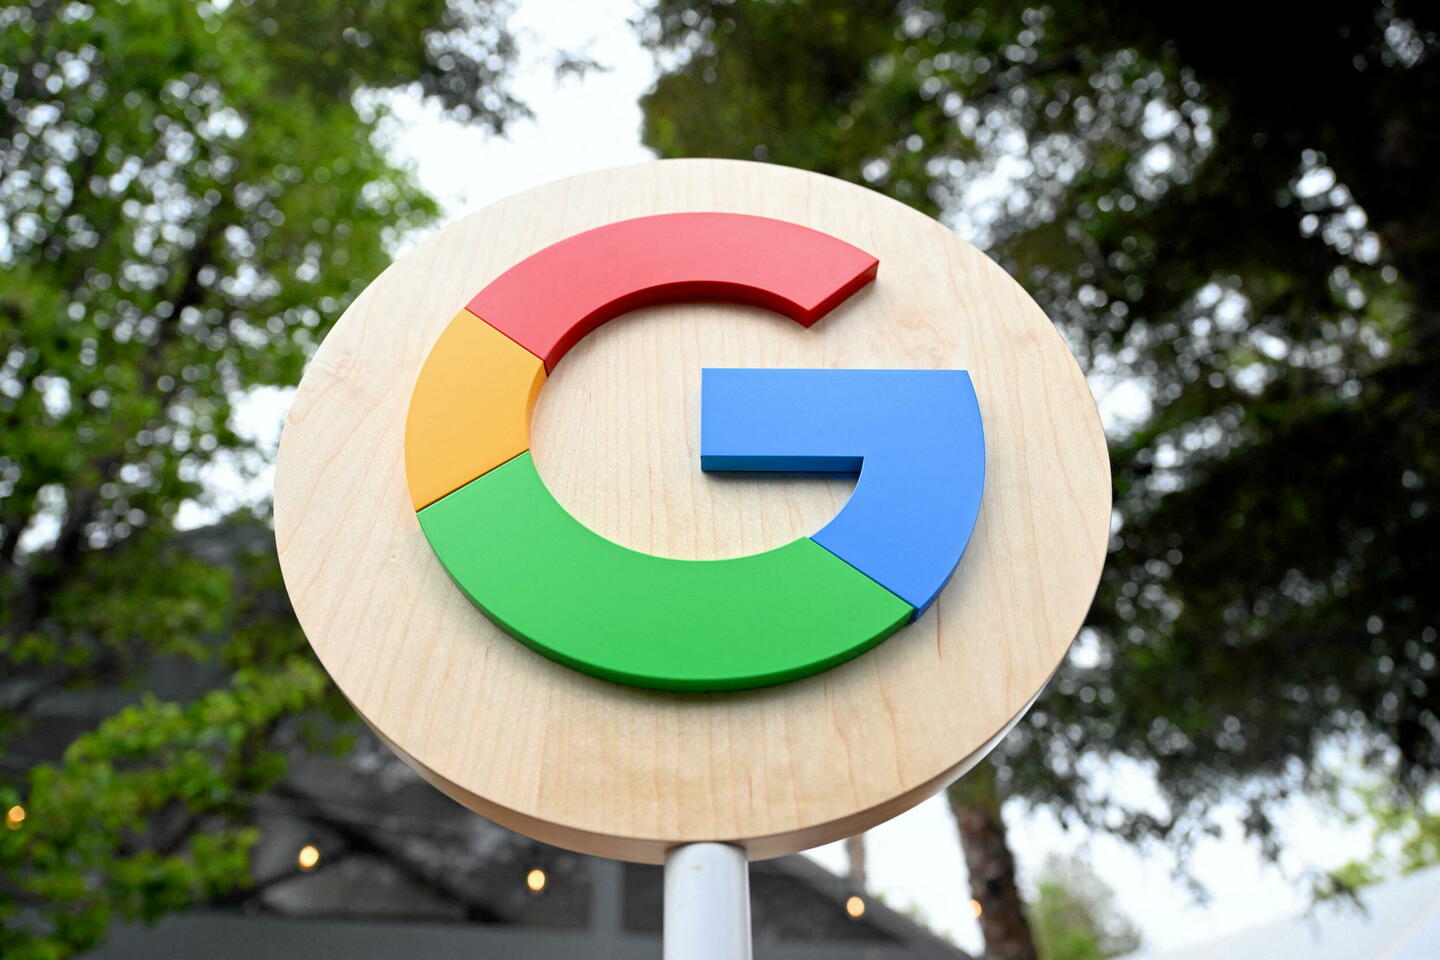 Google écope d’une amende de 2 millions d’euros pour son moteur de recherche